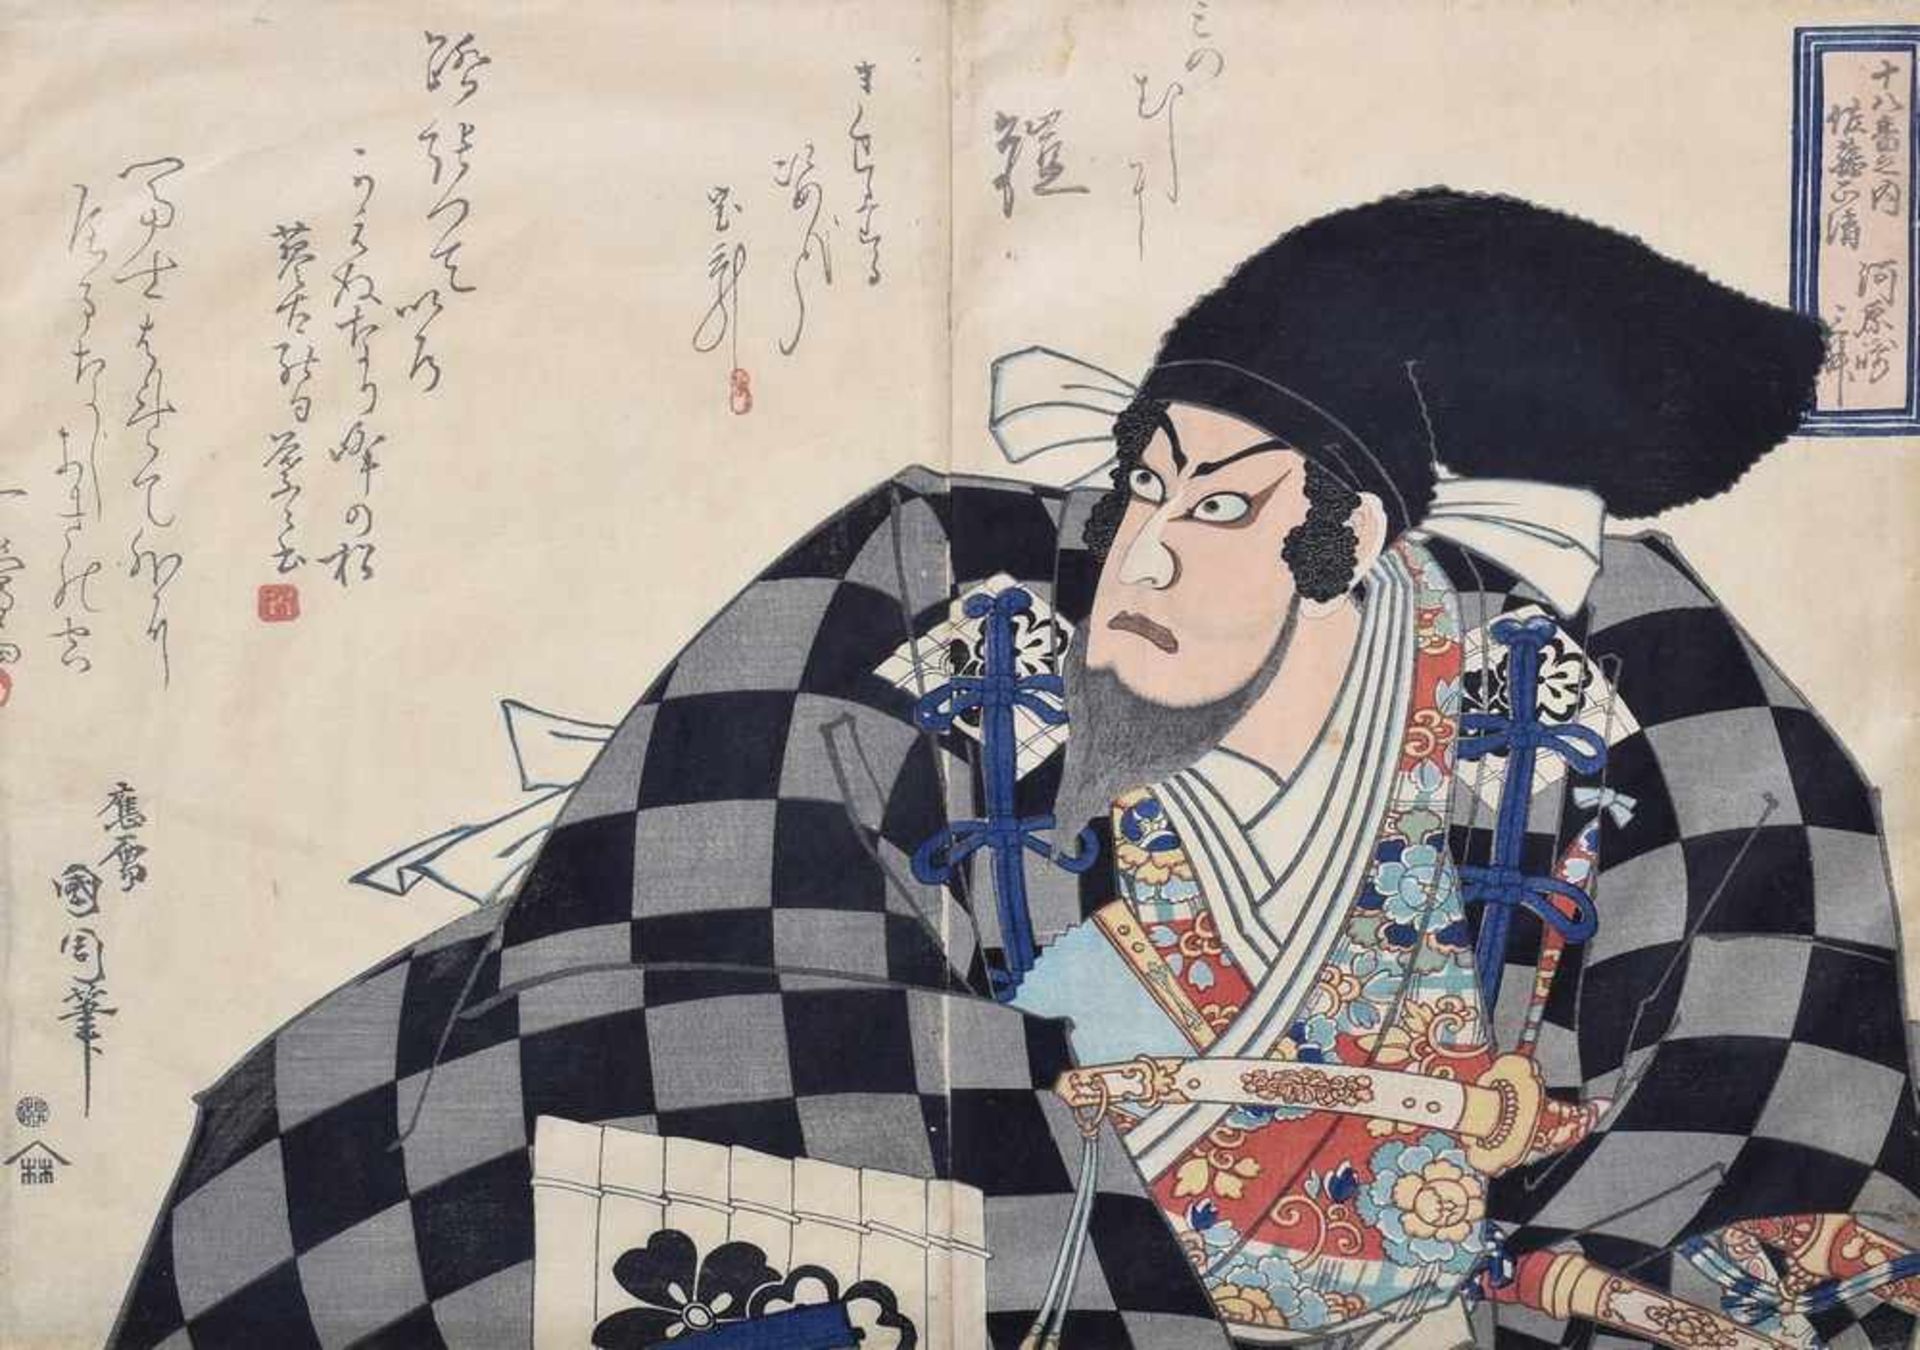 Kunichika, Toyohara (1835-1900) "Schauspieler mit schwarzer Kopfbedeckung", Farbholzschnitt, - Image 2 of 3